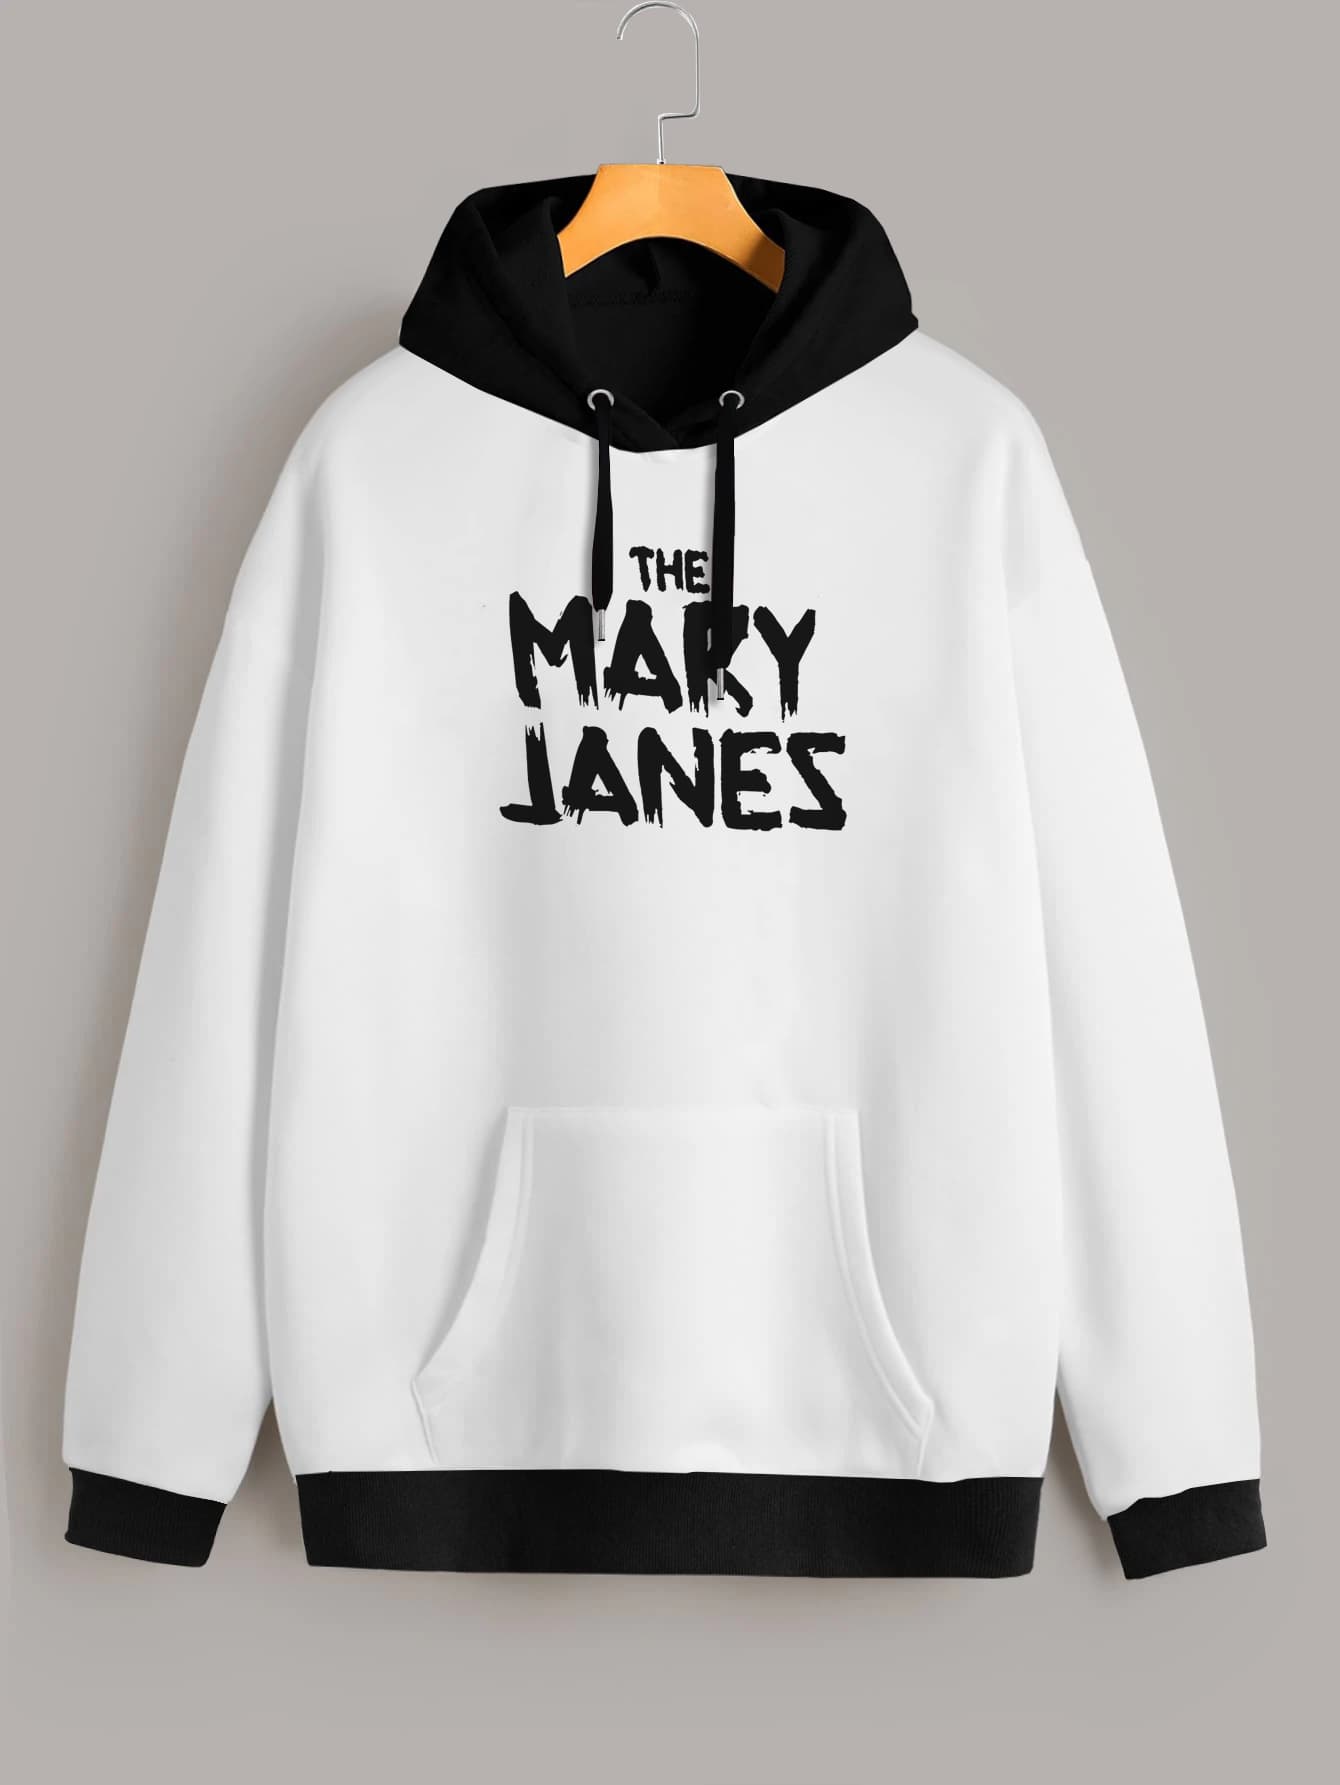 Buzo capota The Mary Janes